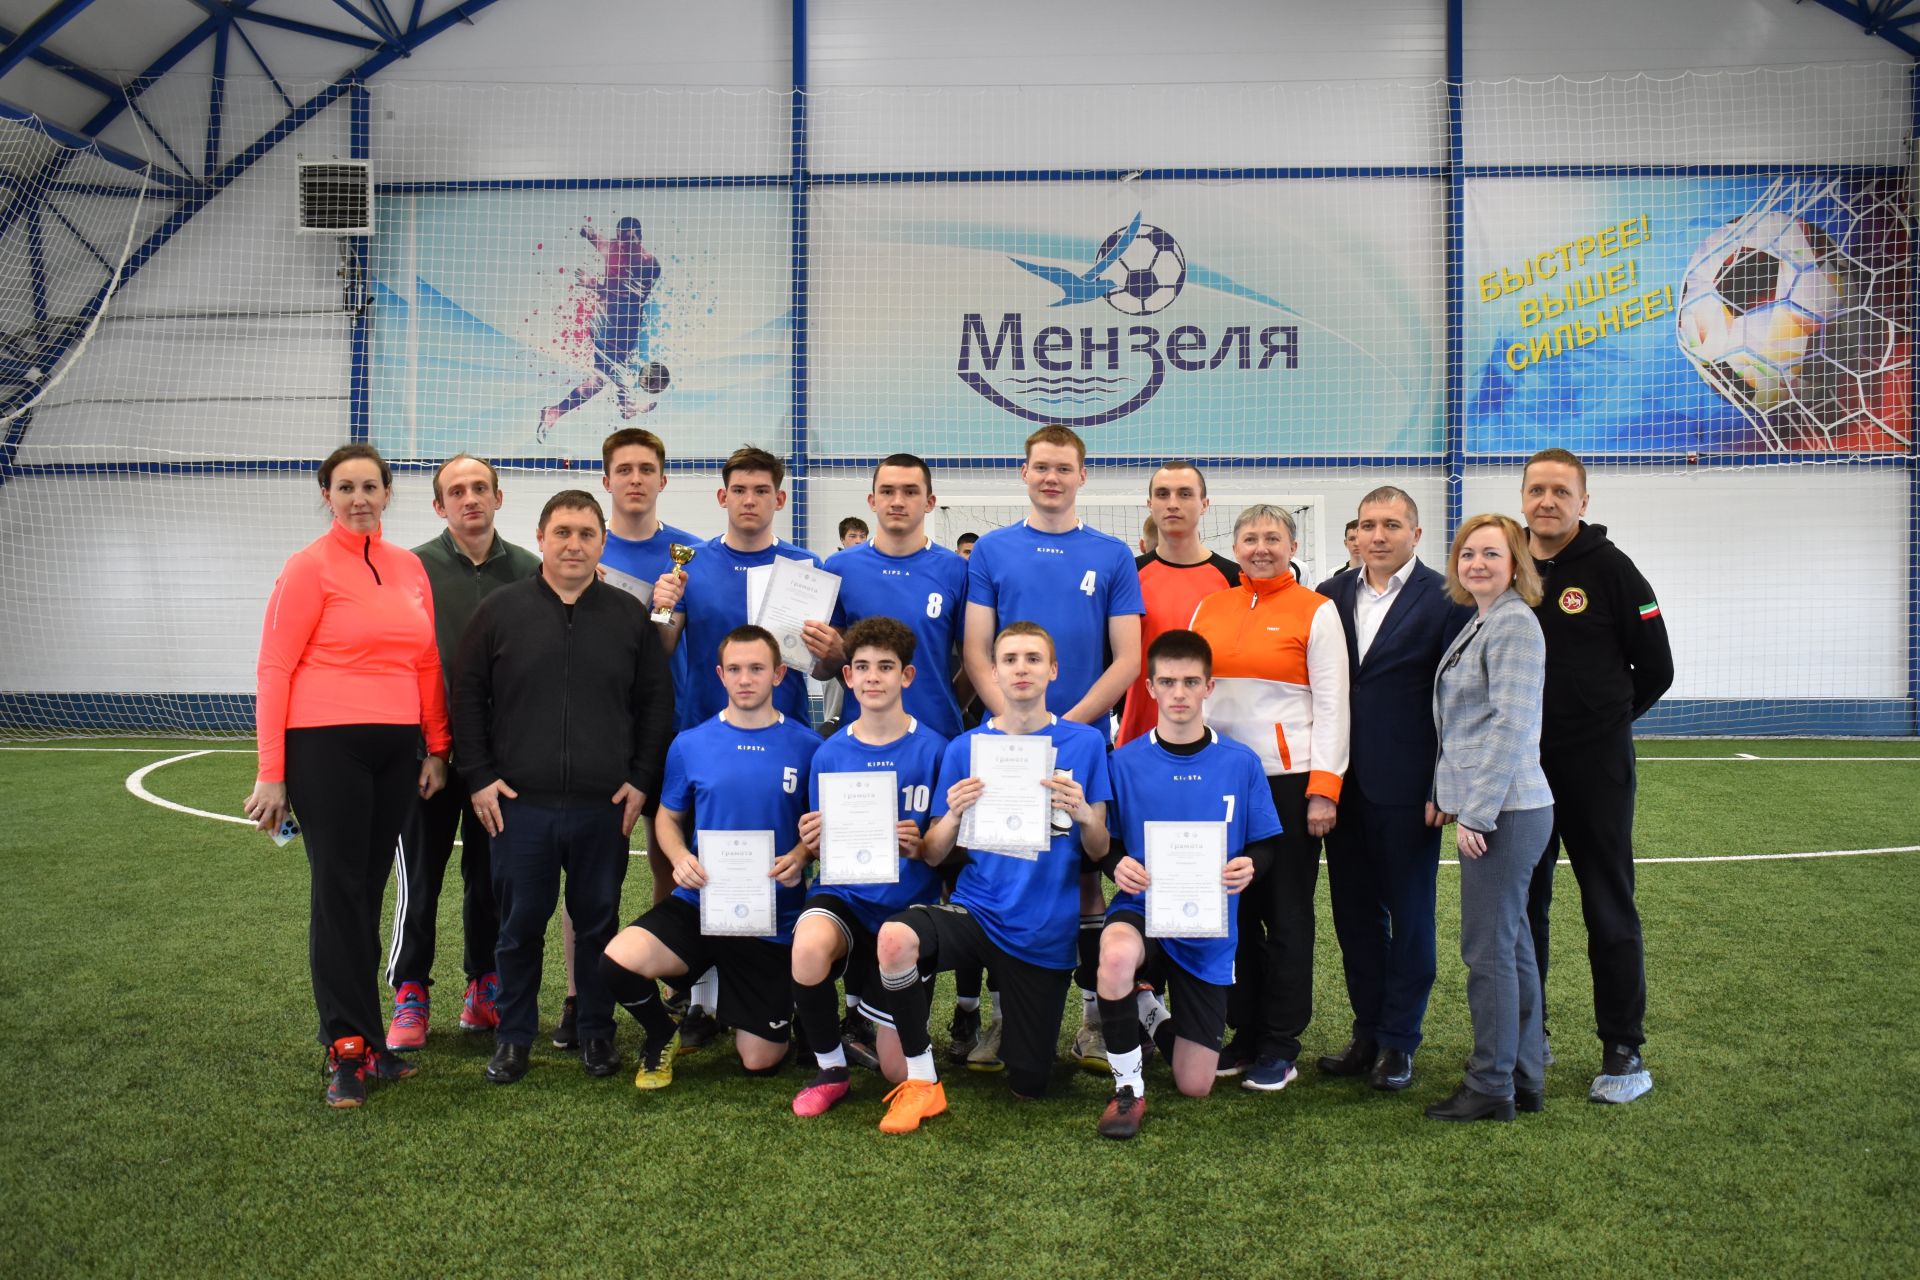 Студенты Мензелинского педагогического колледжа заняли первое место в соревновании по мини-футболу